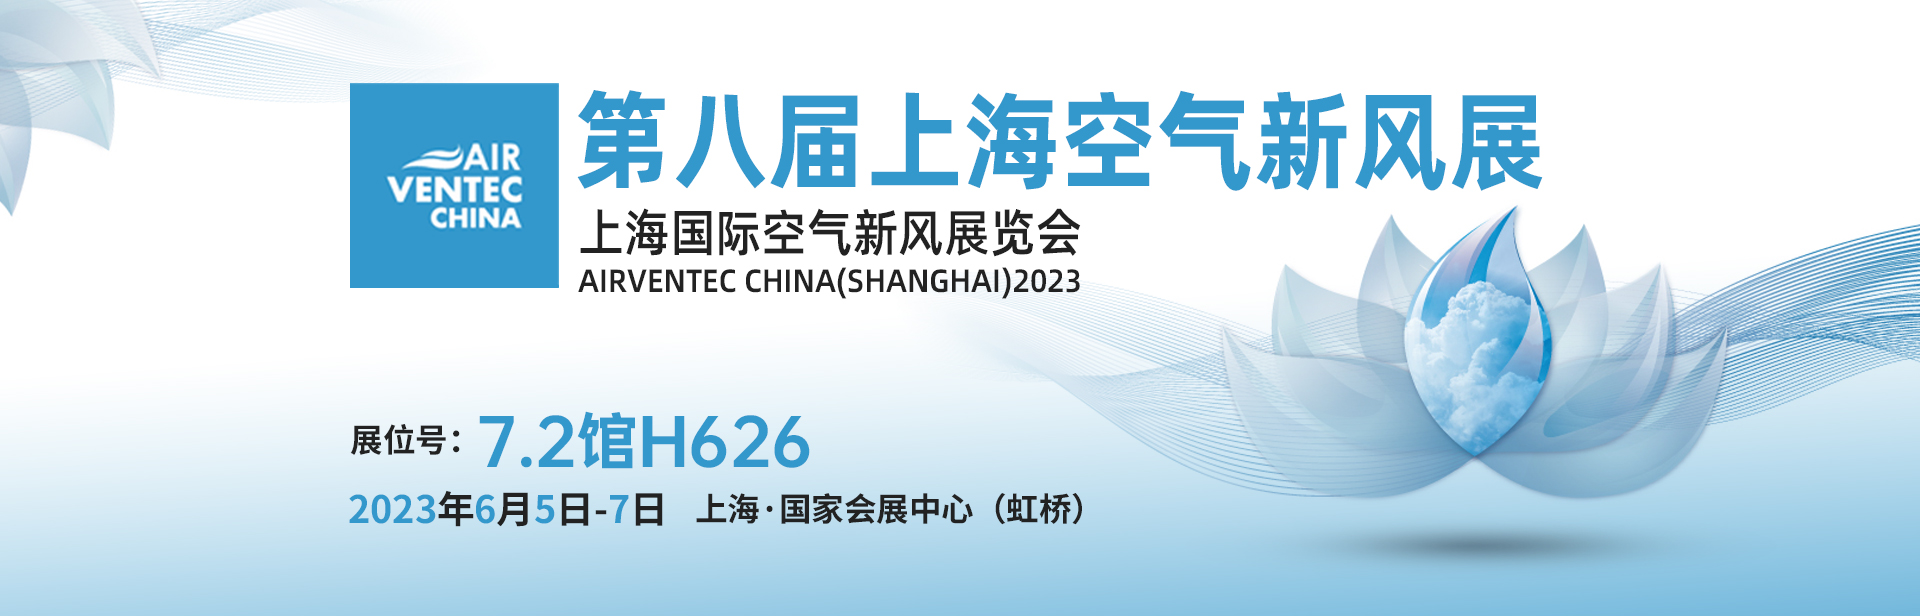 第八届上海空气新风展